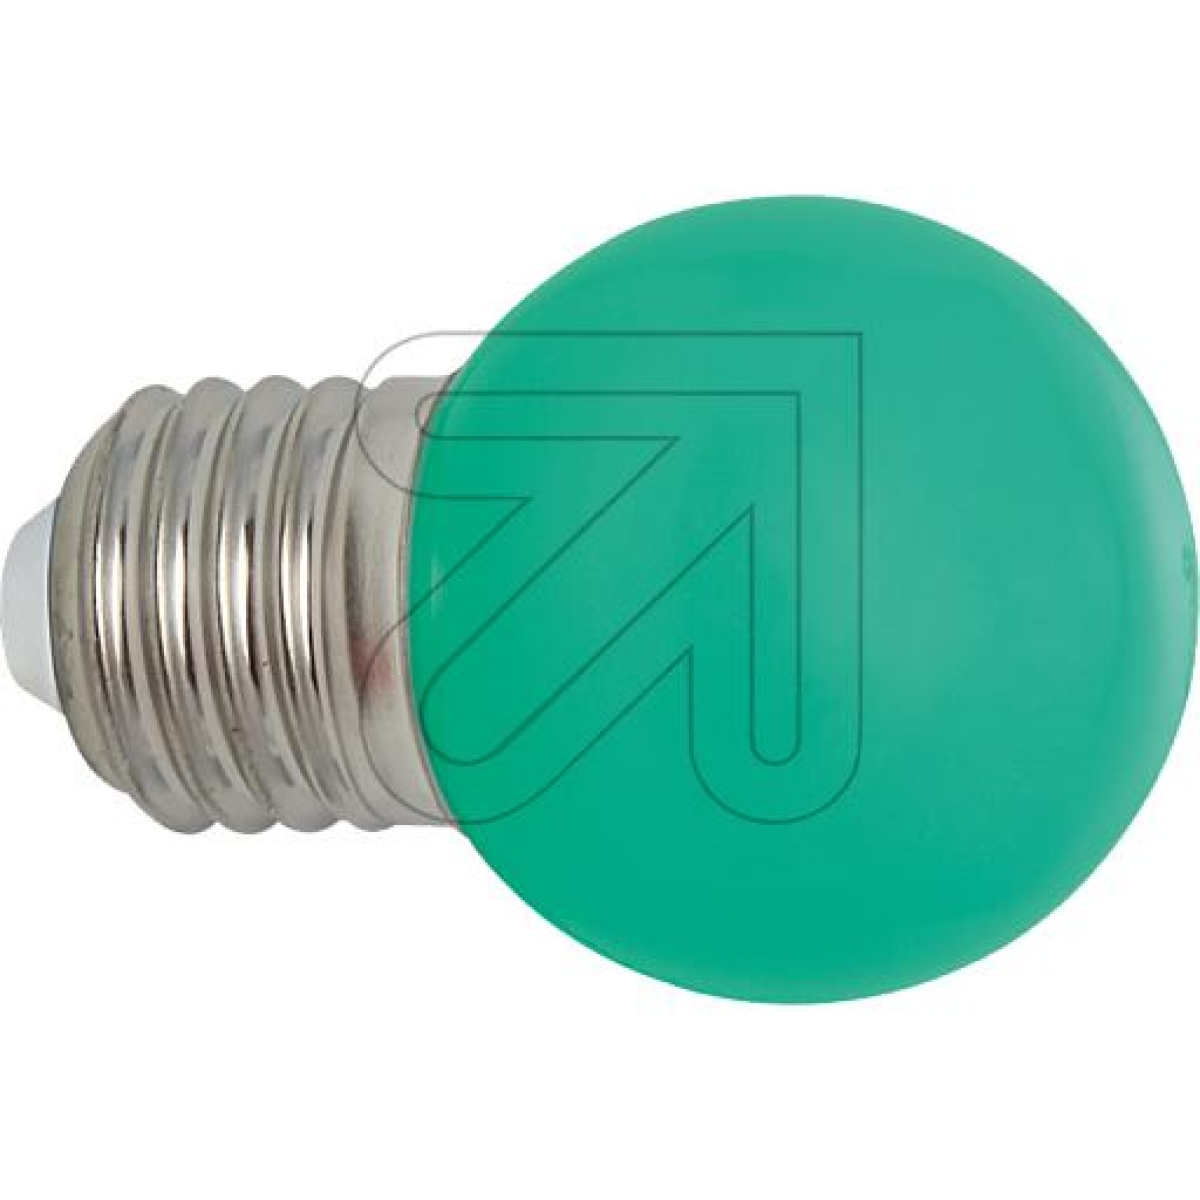 EGBLED drop lamp IP54 E27 1W greenArticle-No: 540225